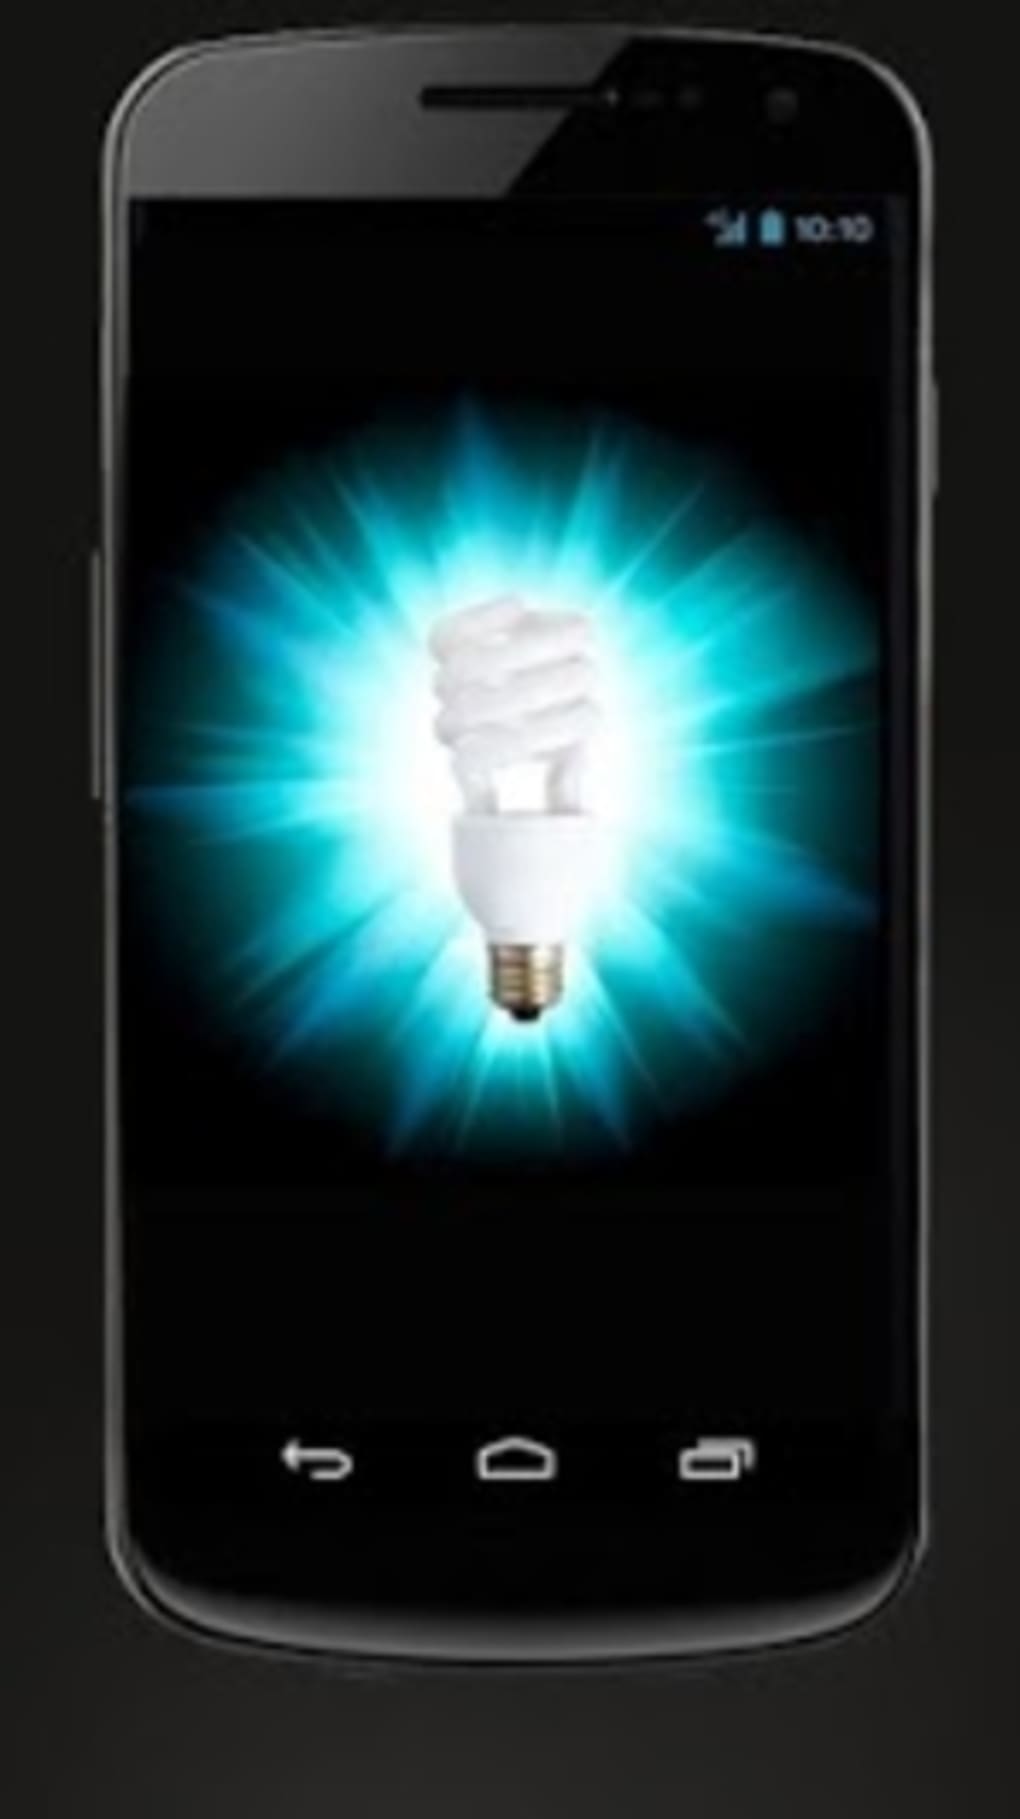 brightest flashlight app